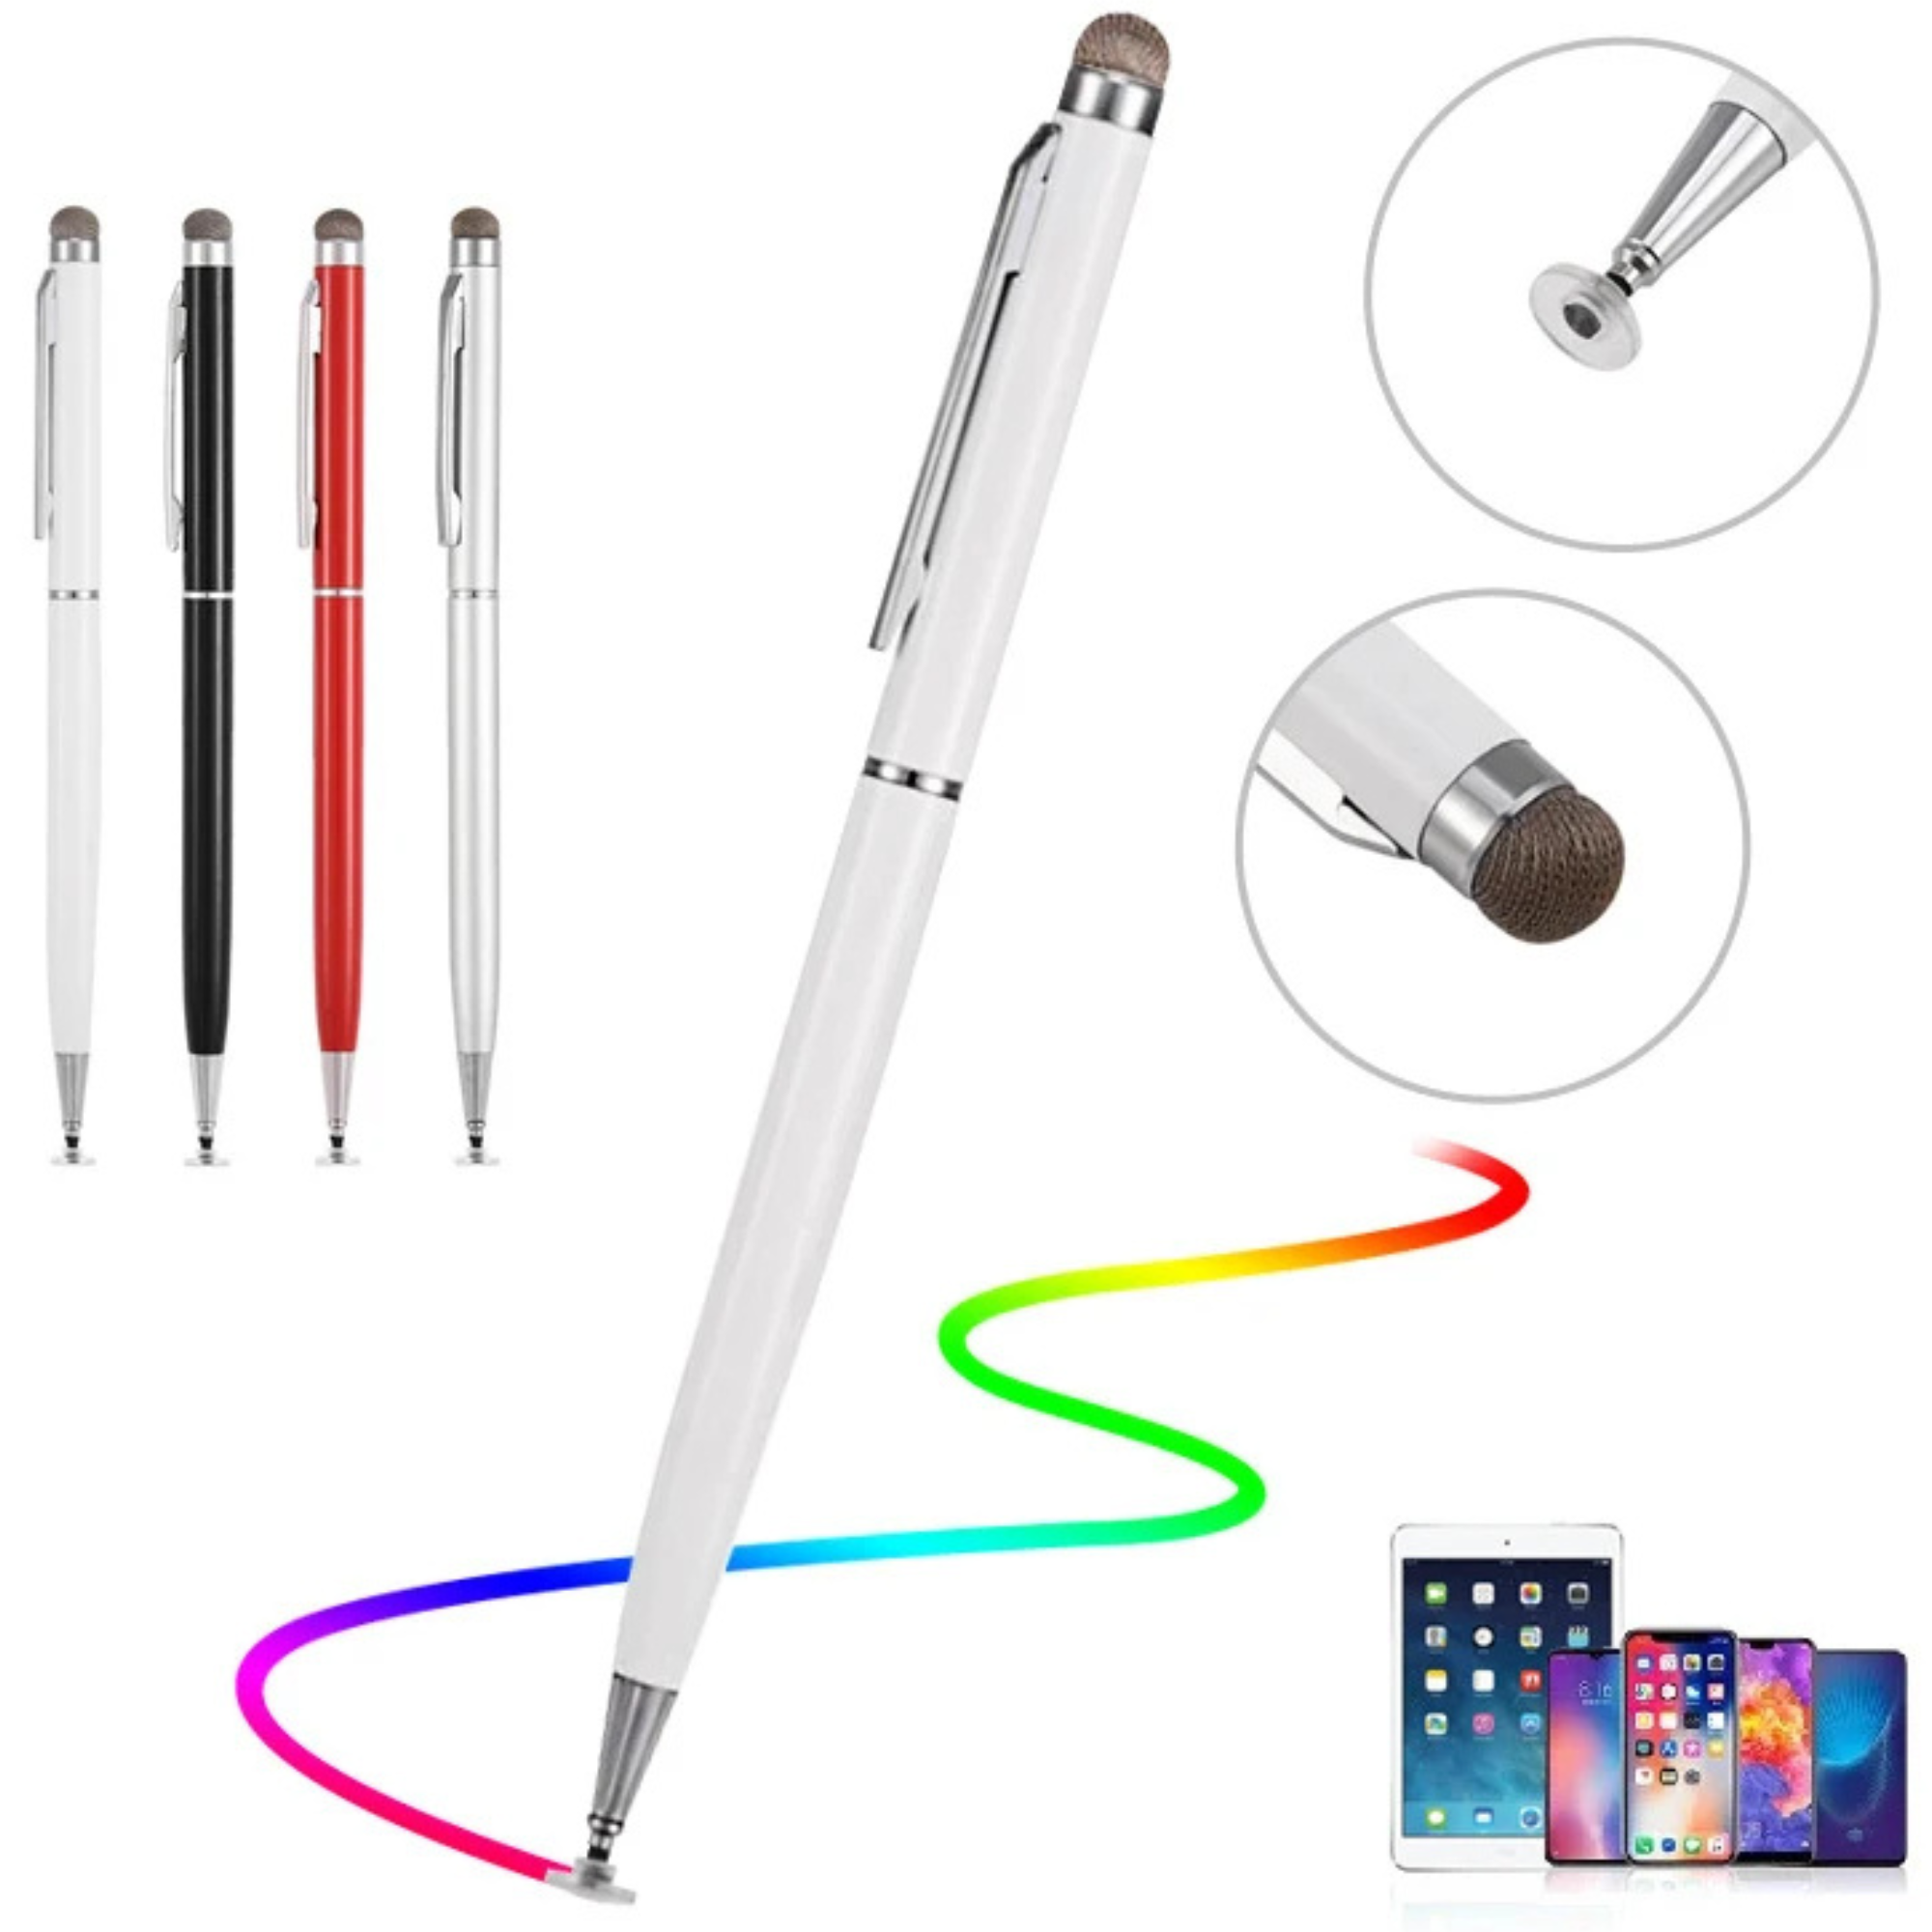 Hochwertiger 2-in-1 Stylus Stift Dicke Dünne Zeichnung,Kapazitiver Bleistift Android, Mobiles Bildschirm Touch